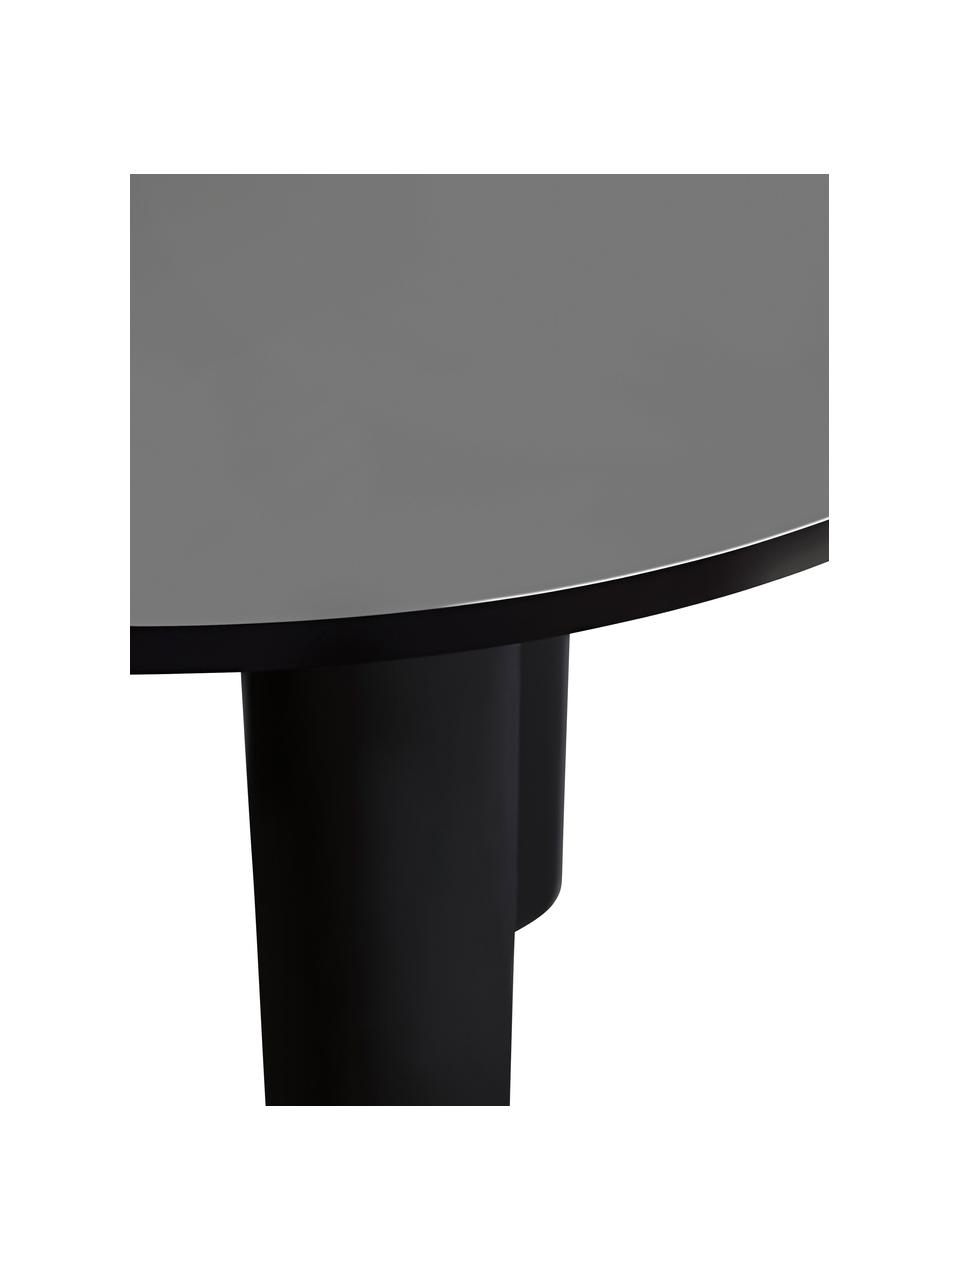 Runder Tisch Colette in Schwarz, Ø 120 cm, Mitteldichte Holzfaserplatte (MDF), beschichtet, Schwarz, Ø 120 x H 72 cm